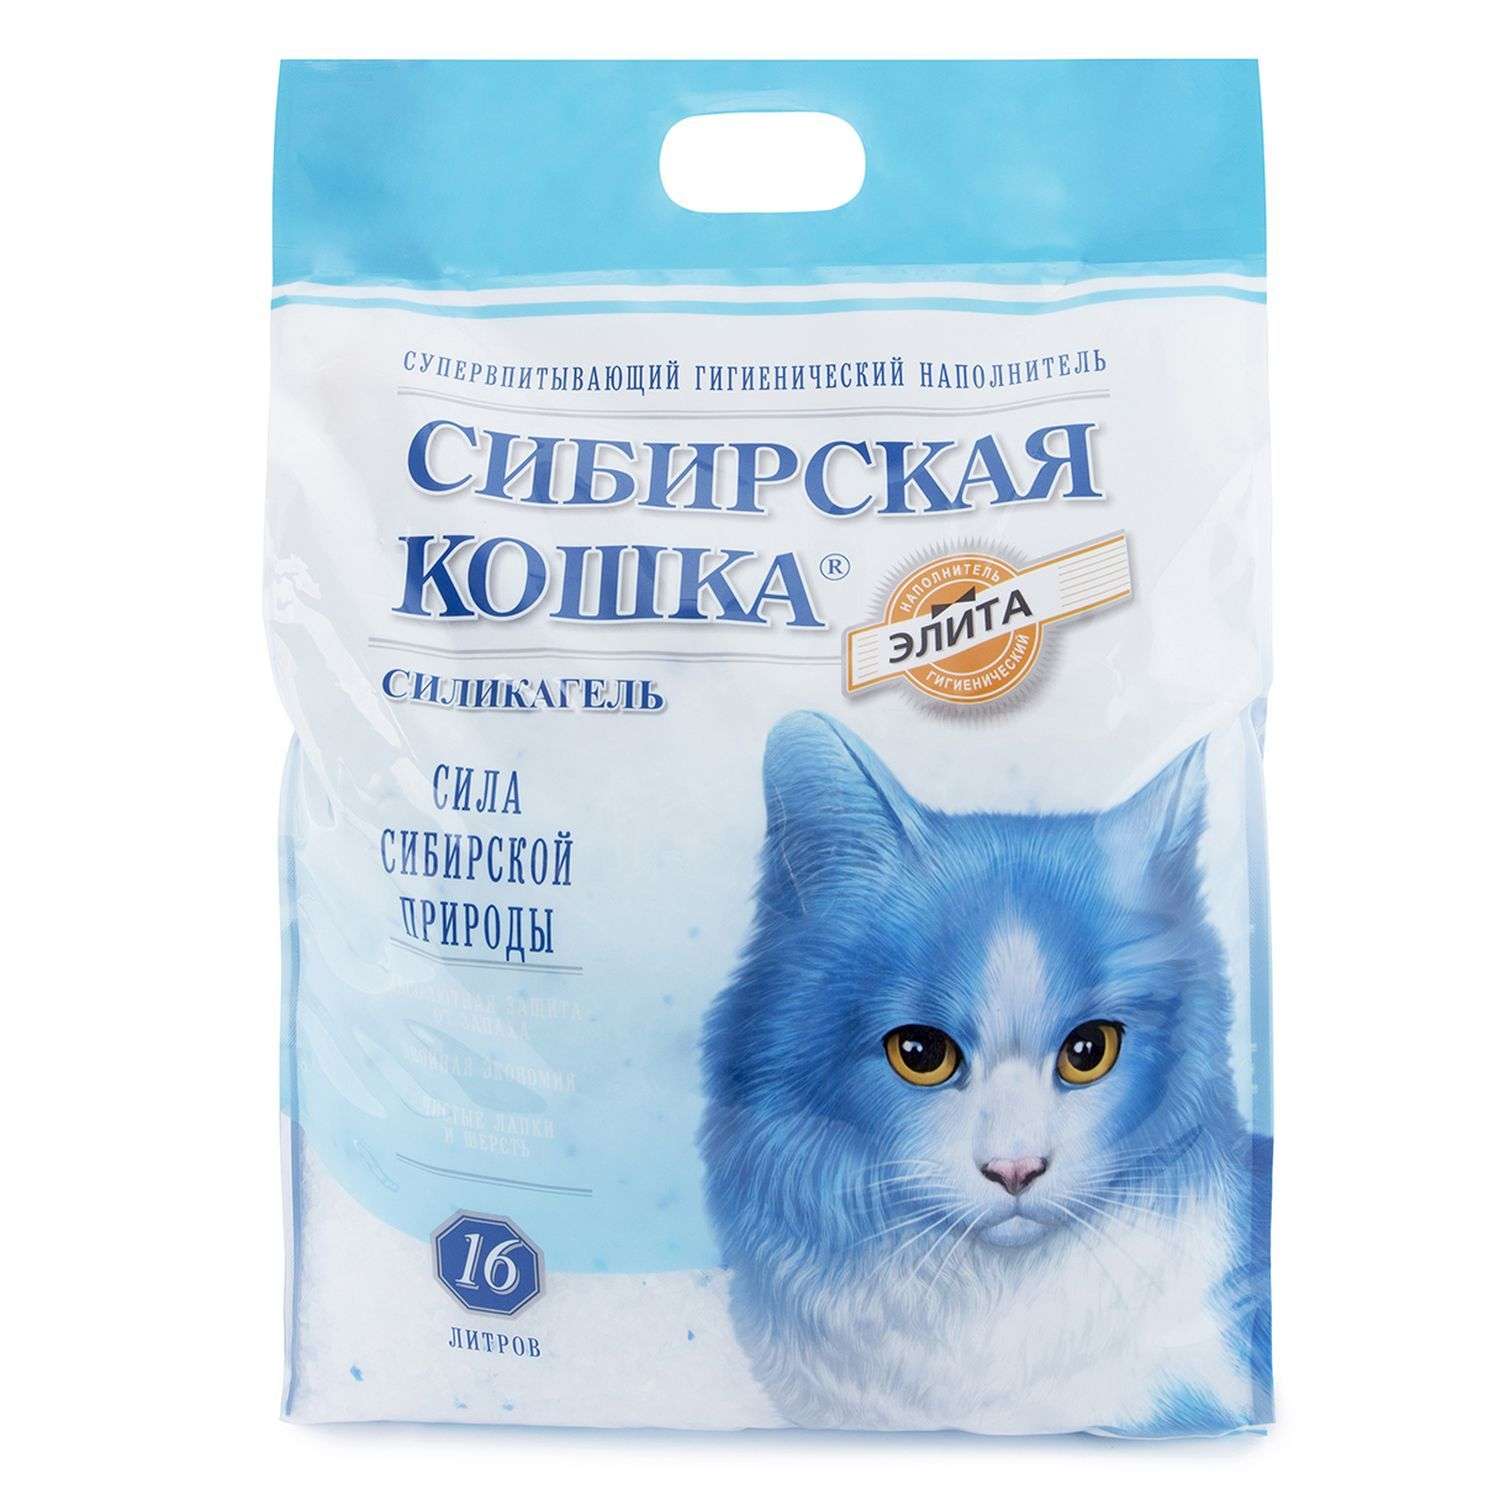 Наполнитель для кошек Сибирская кошка Элита 16л купить по цене 2200 ₽ с  доставкой в Москве и России, отзывы, фото